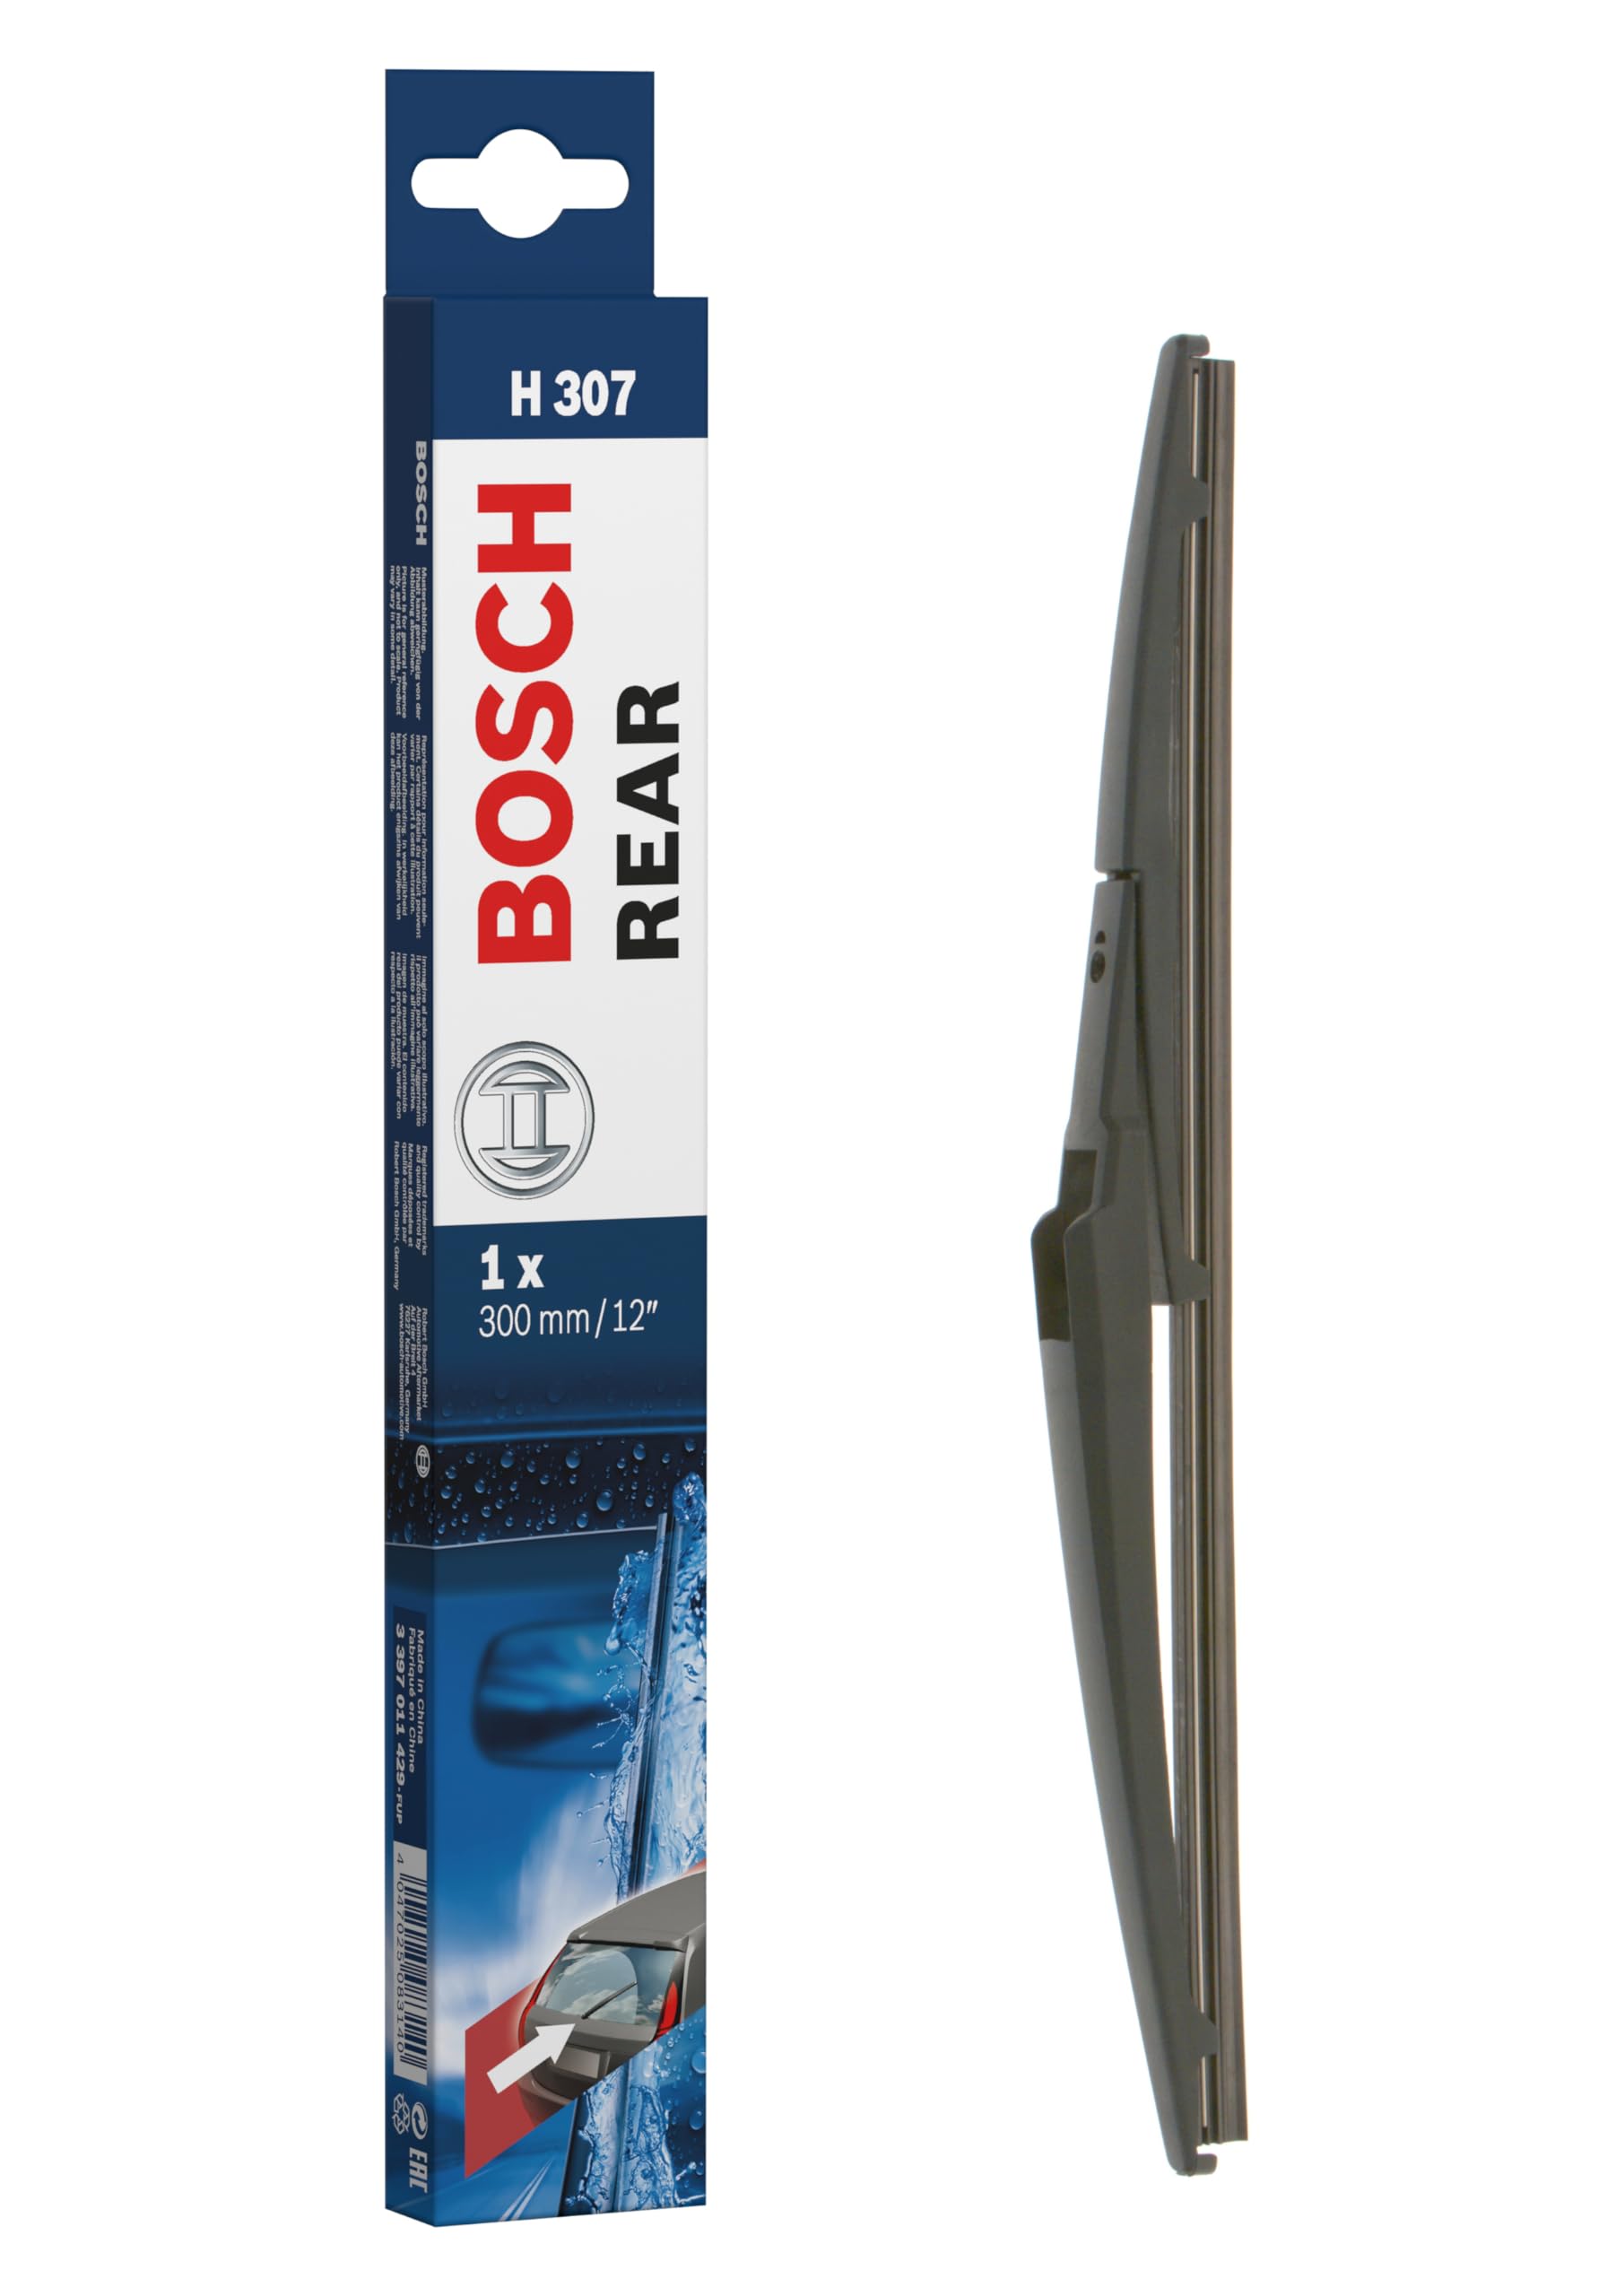 Bosch Scheibenwischer Rear H307, Länge: 300mm – Scheibenwischer für Heckscheibe von Bosch Automotive